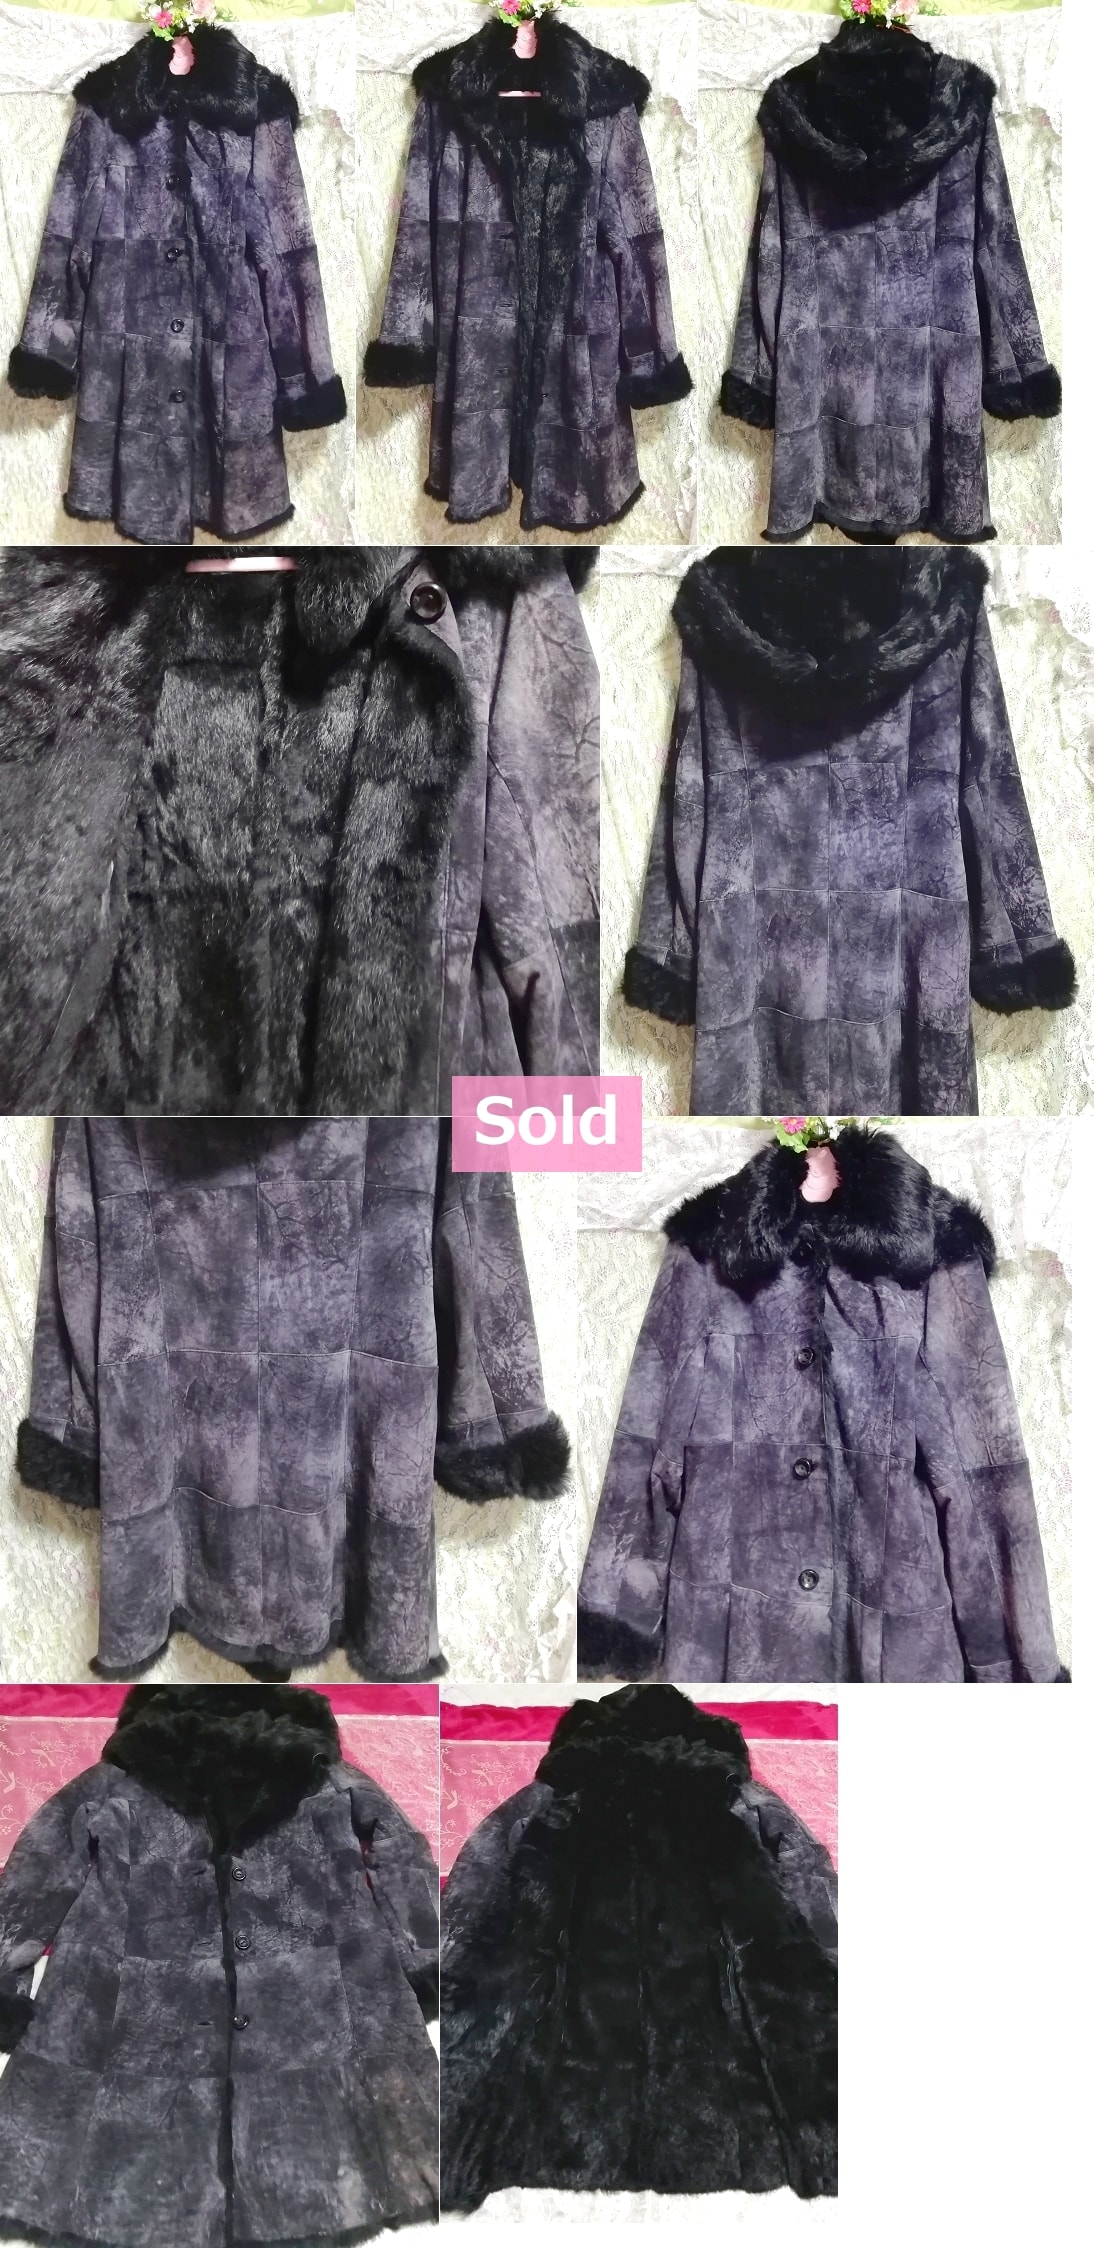 GIPSY ब्लू लक्जरी स्पेन चमड़े काले खरगोश फर लंबे कोट / बाहरी वस्त्र